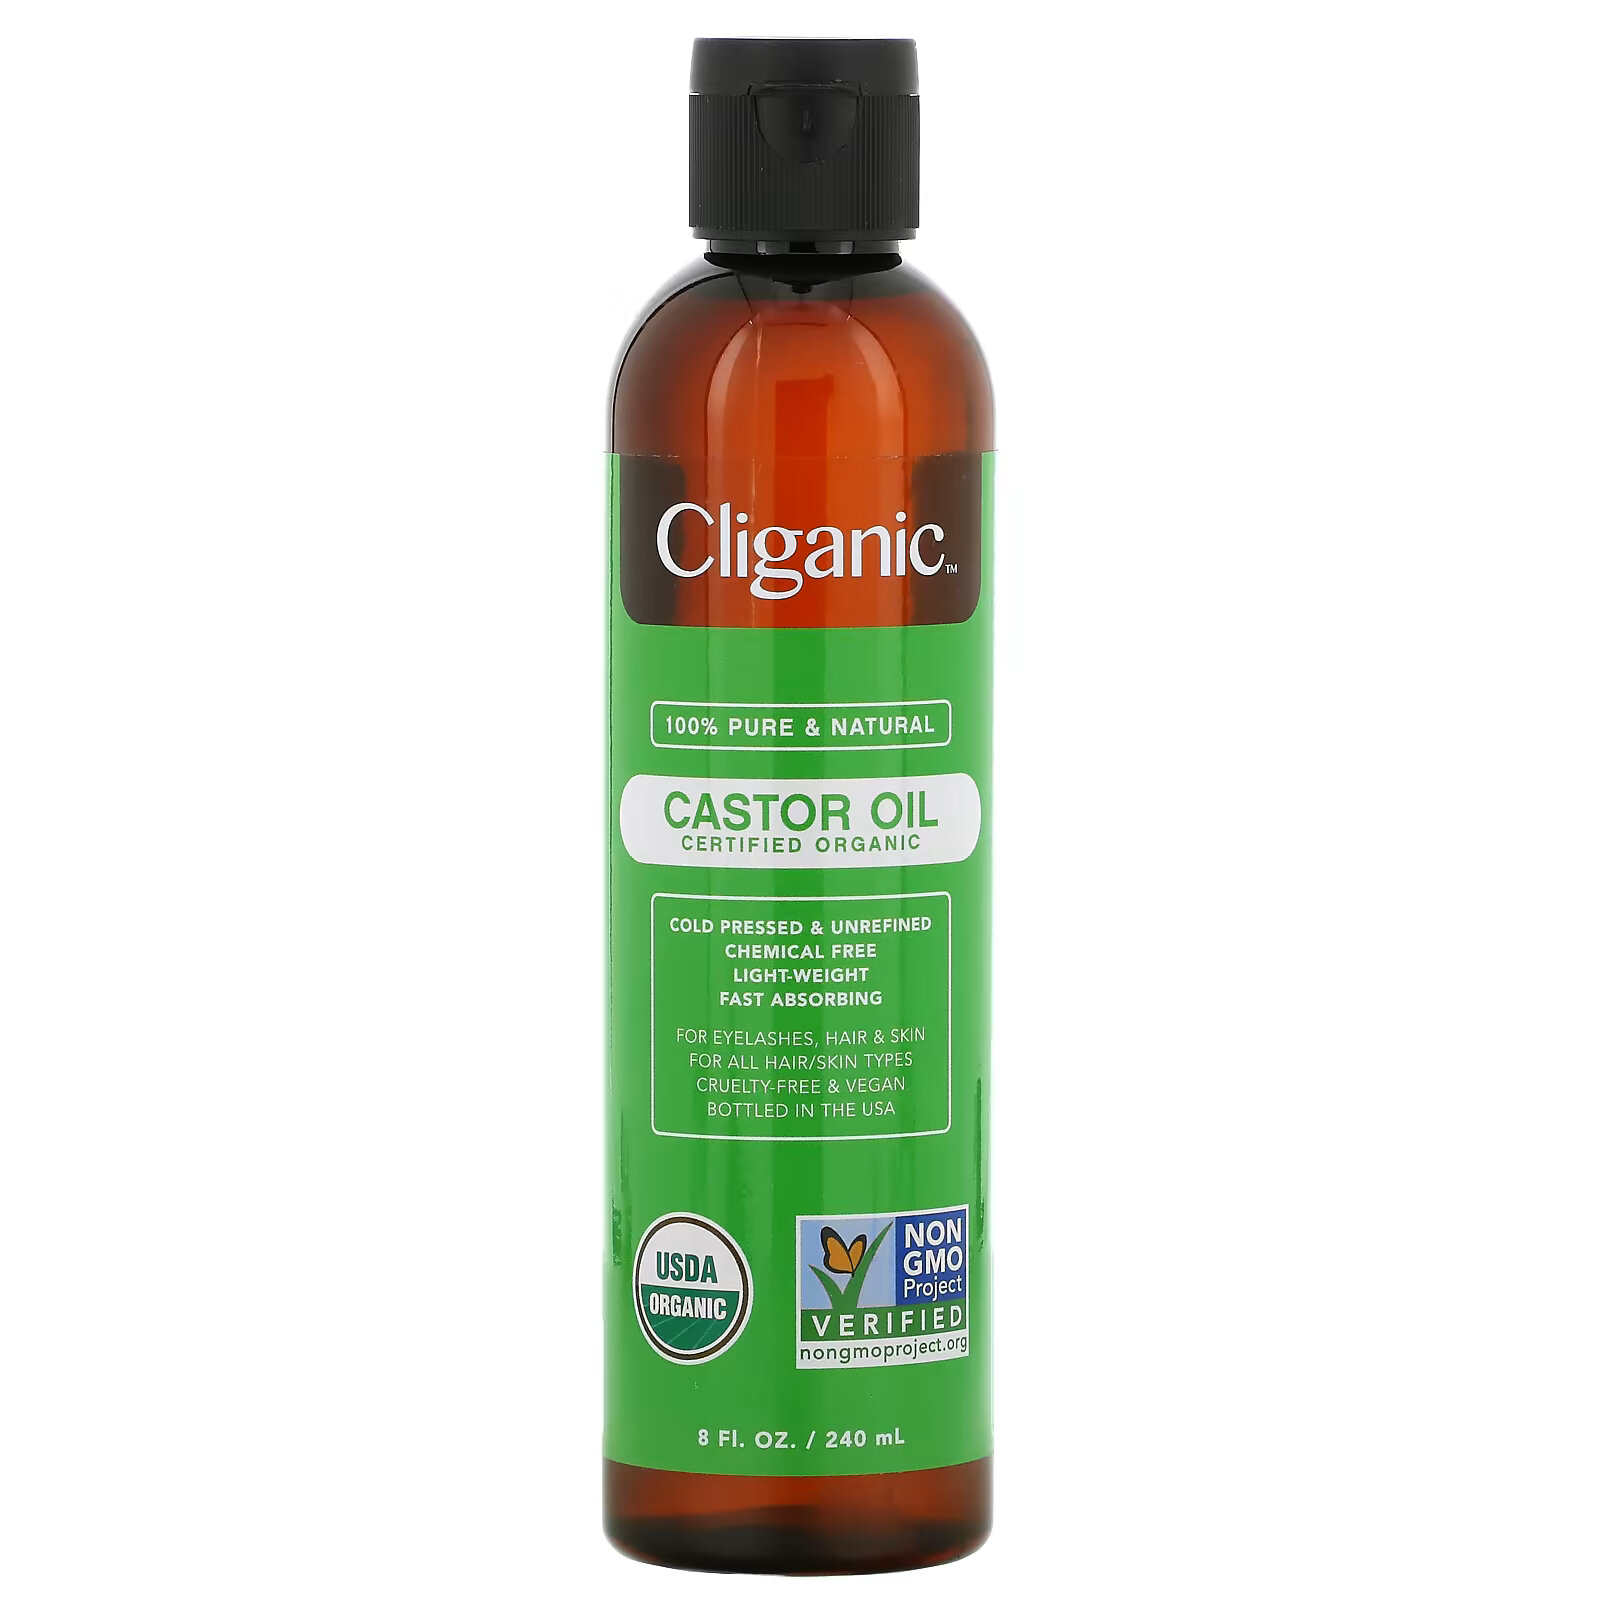 Касторовое масло Cliganic, 240 мл масло касторовое cliganic 100% чистое и натуральное 473 мл